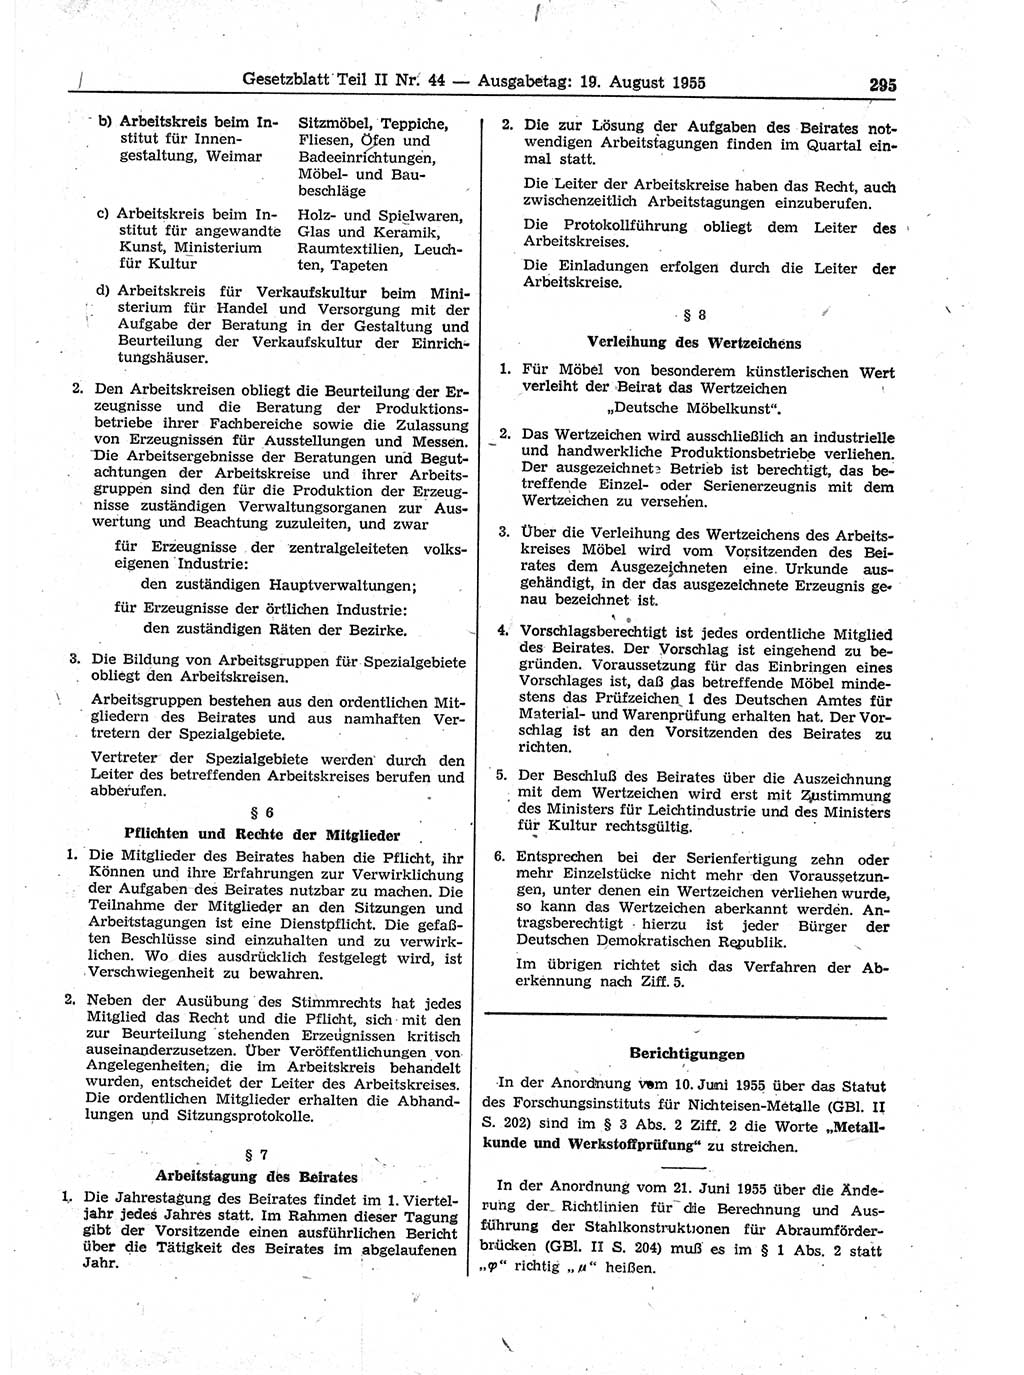 Gesetzblatt (GBl.) der Deutschen Demokratischen Republik (DDR) Teil ⅠⅠ 1955, Seite 295 (GBl. DDR ⅠⅠ 1955, S. 295)